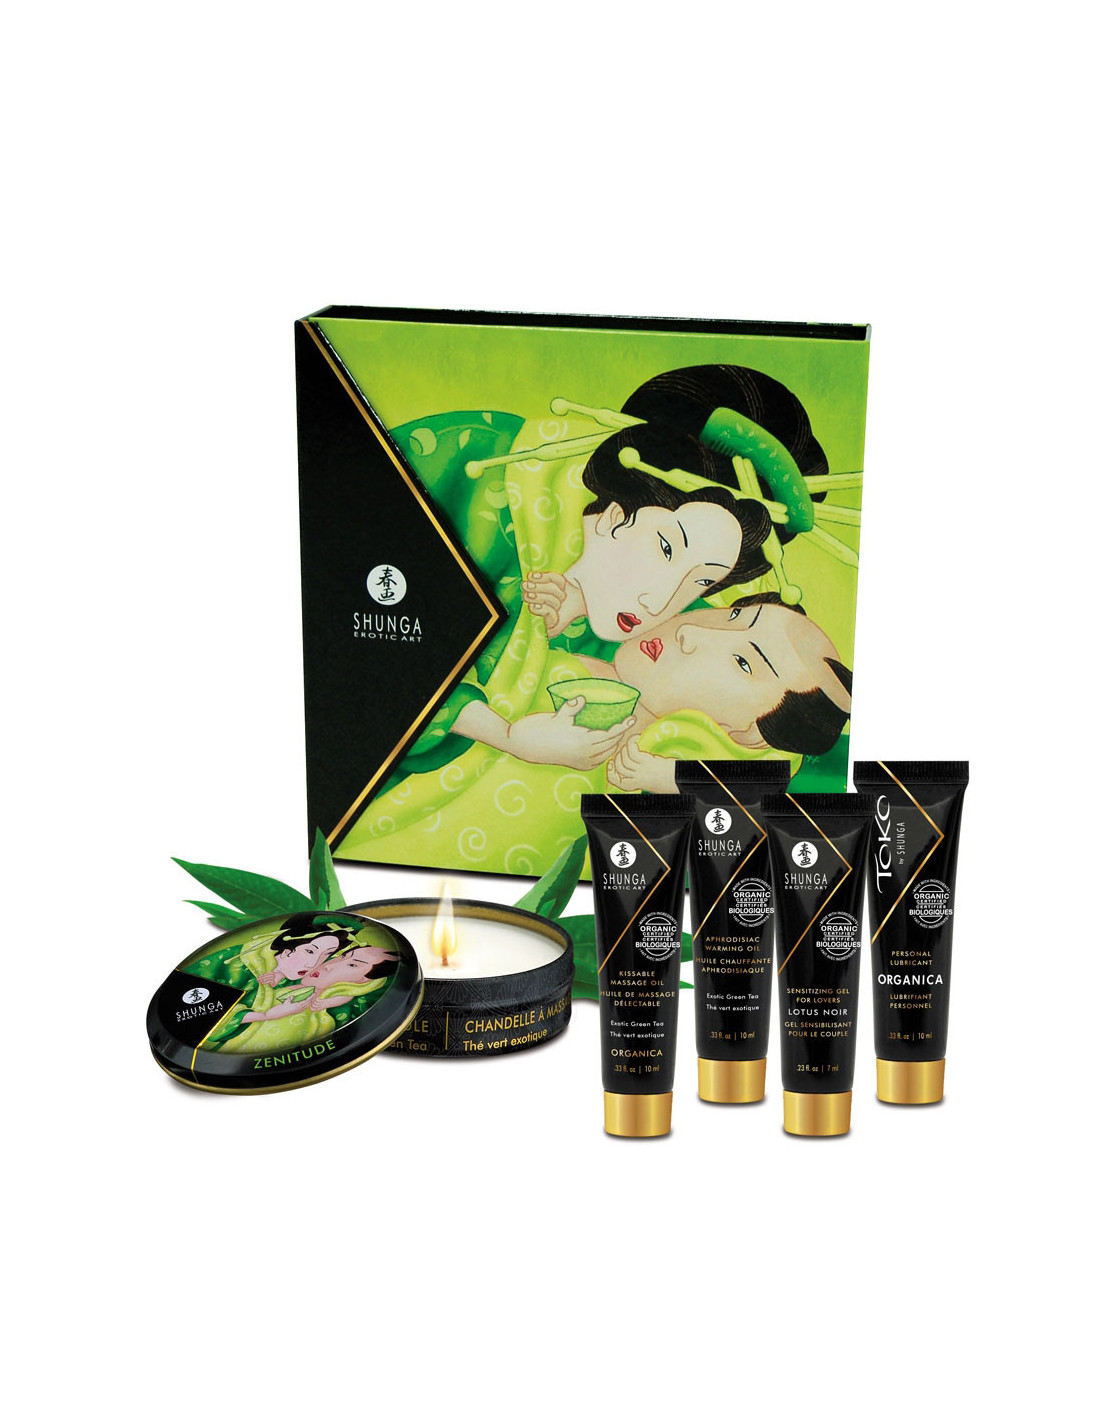 Shunga Coffret Secret de Geisha au The vert exotique 3n2qKIOp